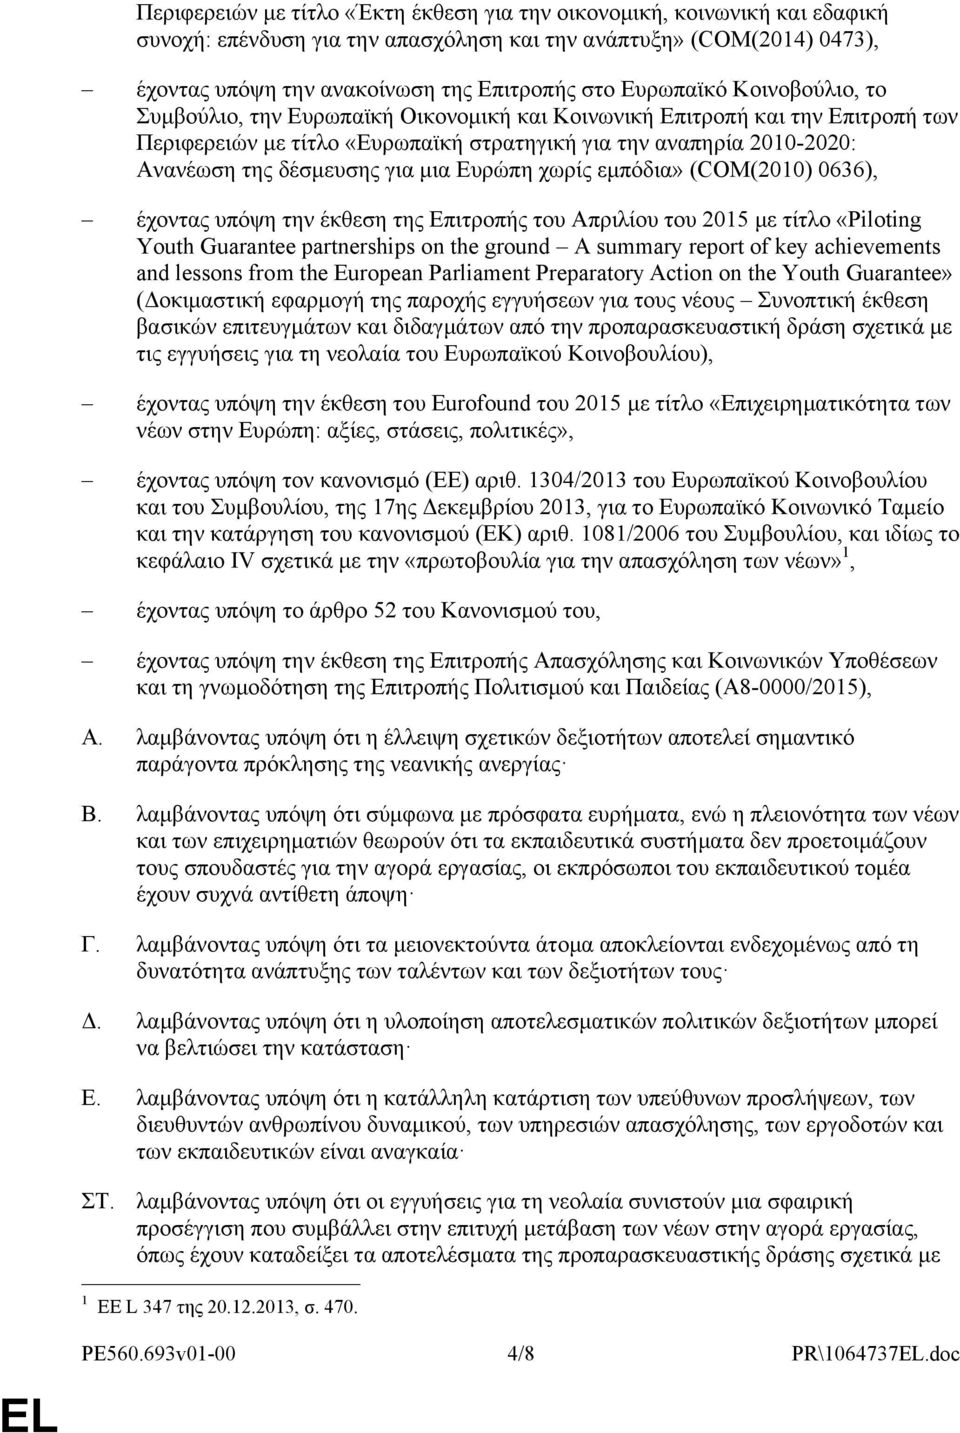 για μια Ευρώπη χωρίς εμπόδια» (COM(2010) 0636), έχοντας υπόψη την έκθεση της Επιτροπής του Απριλίου του 2015 με τίτλο «Piloting Youth Guarantee partnerships on the ground A summary report of key